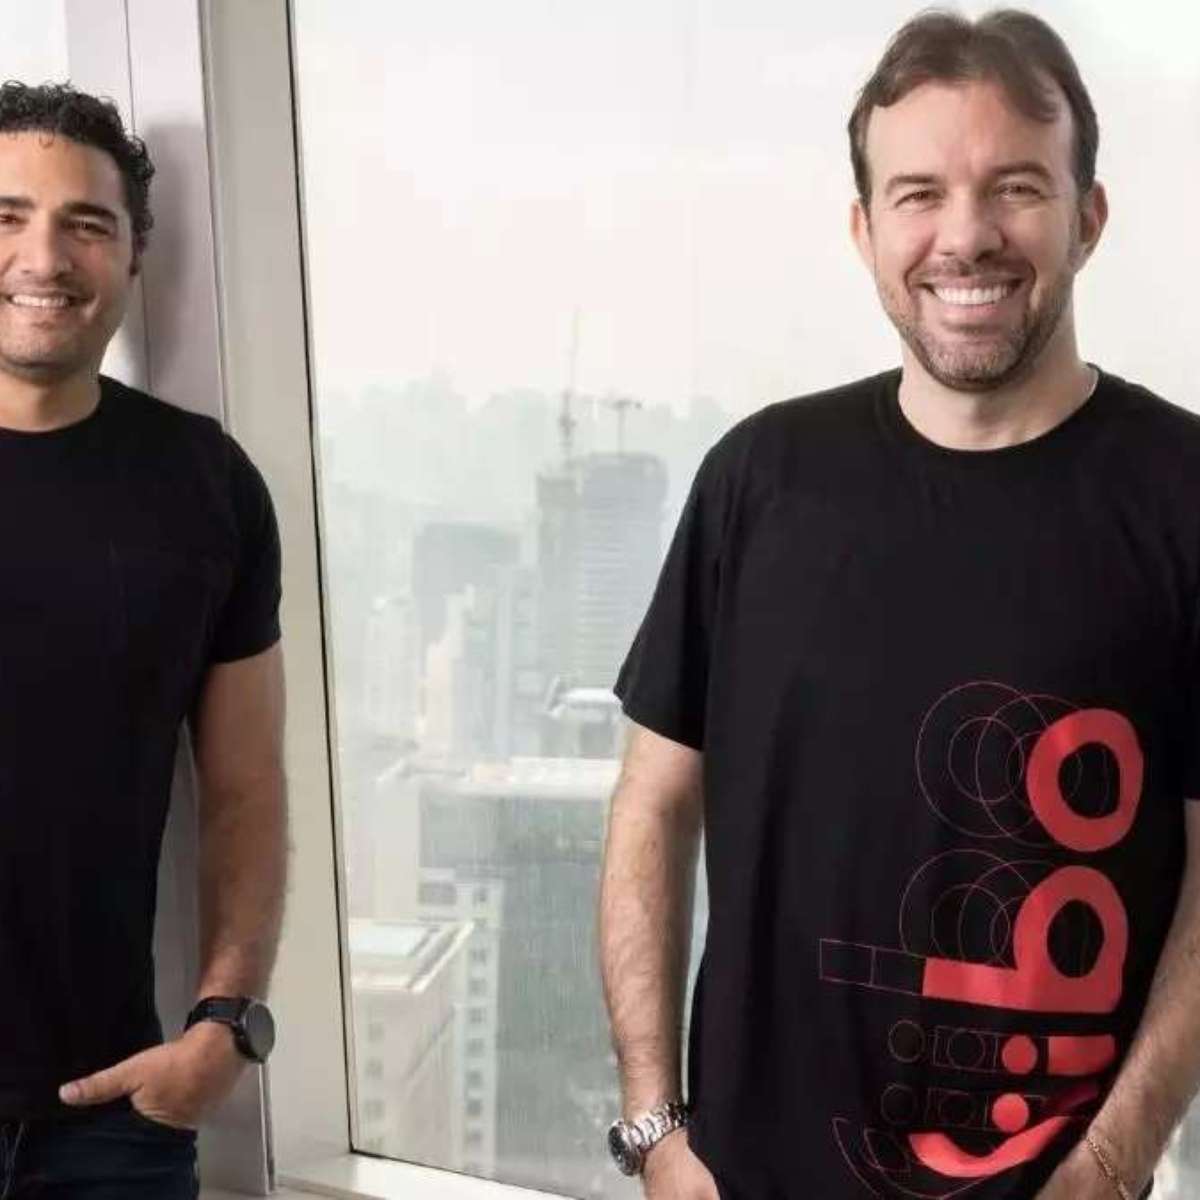 Raul Holderf Nascimento on X: O Yahoo! Brasil deixou de publicar  conteúdos. O portal registrava cerca de 85 milhões de visitas/mês e  resolveu tirar tudo do ar. Desde então, todo acesso é